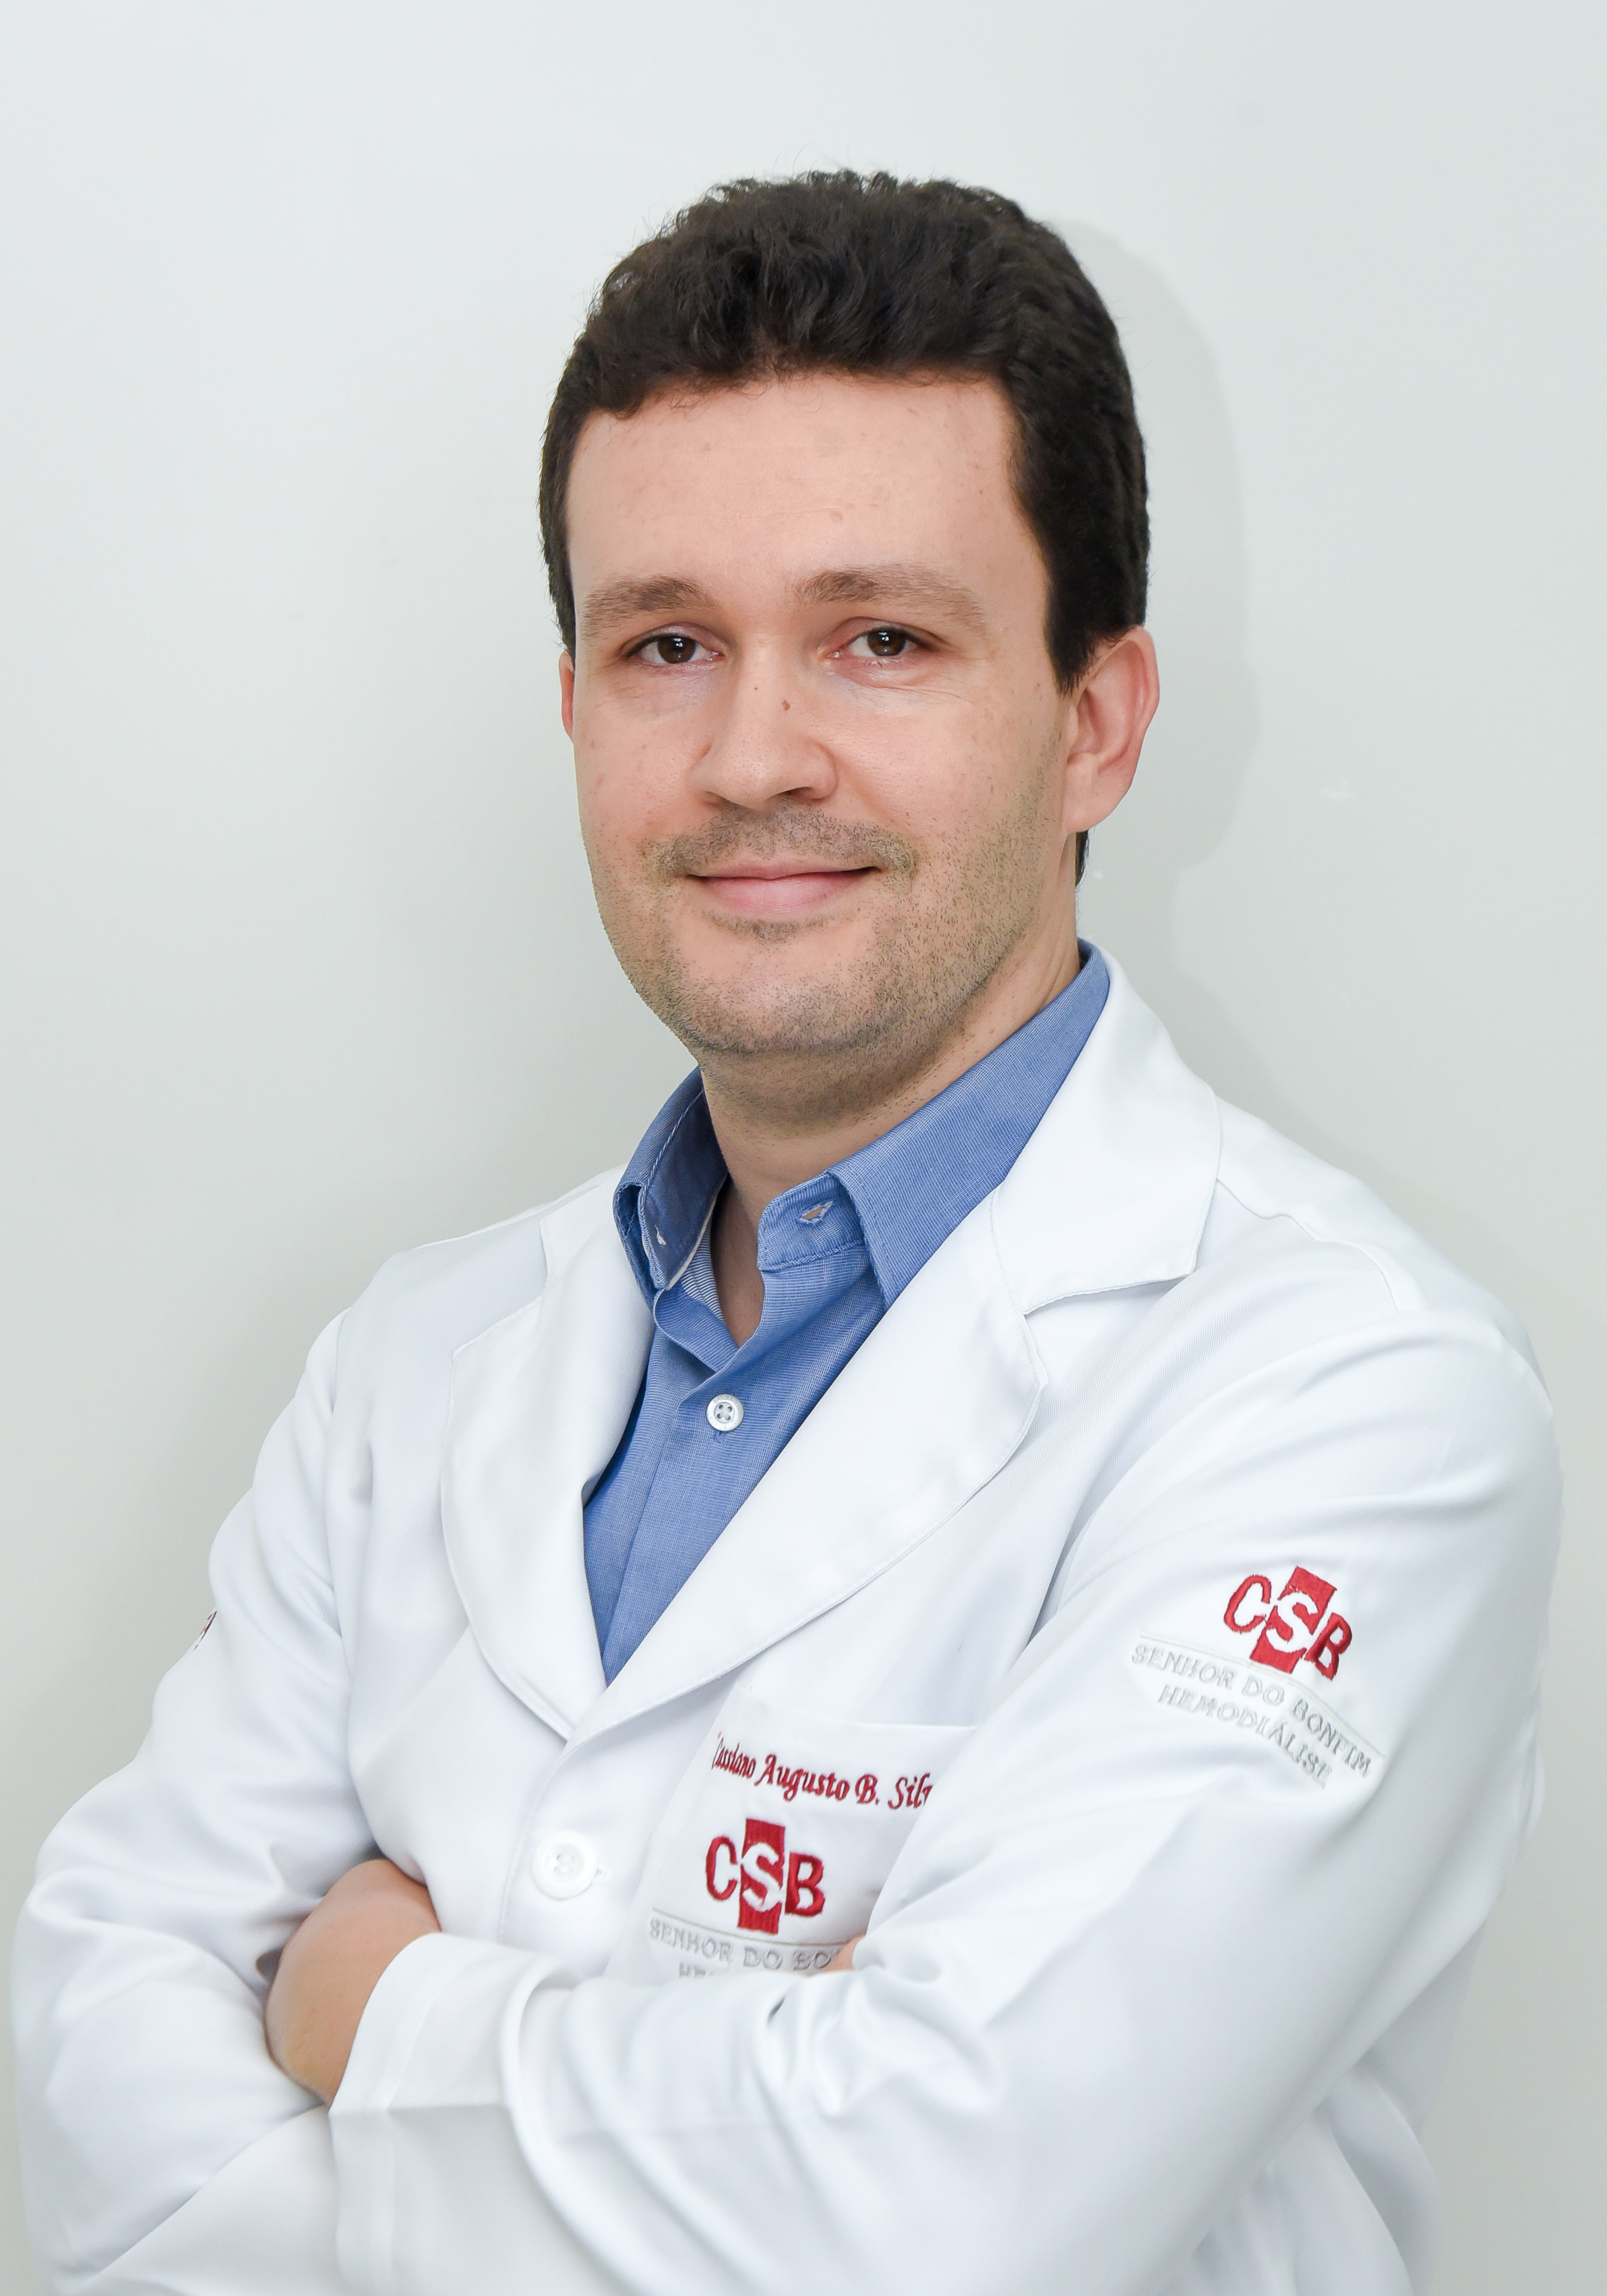 Dr. Cassiano Augusto Braga Silva